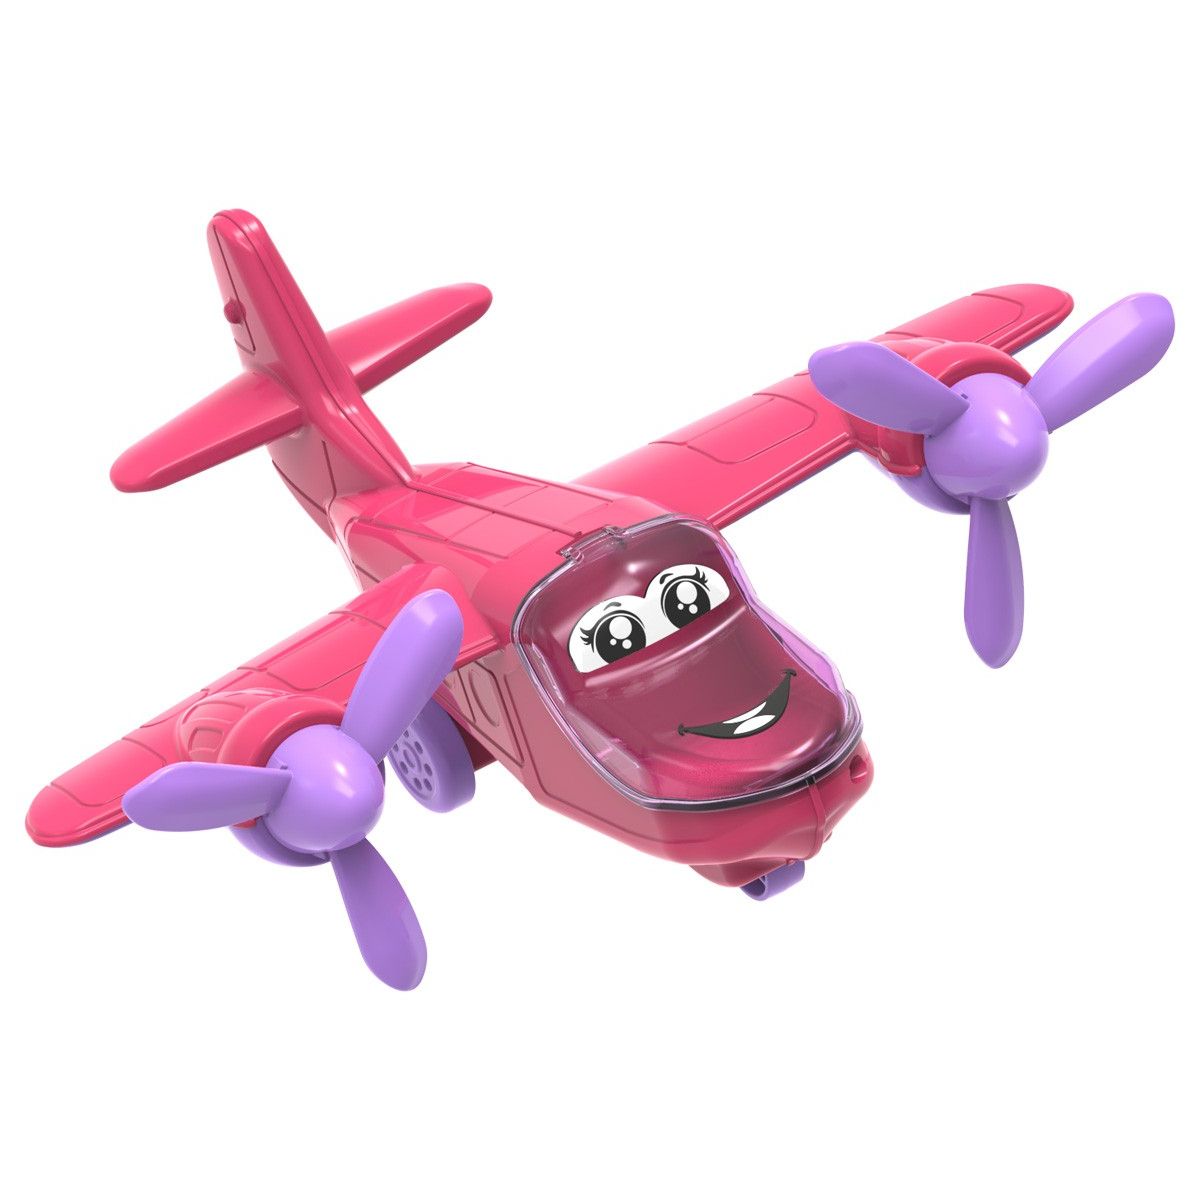 Пластиковая игрушка "Самолет" (розовый)